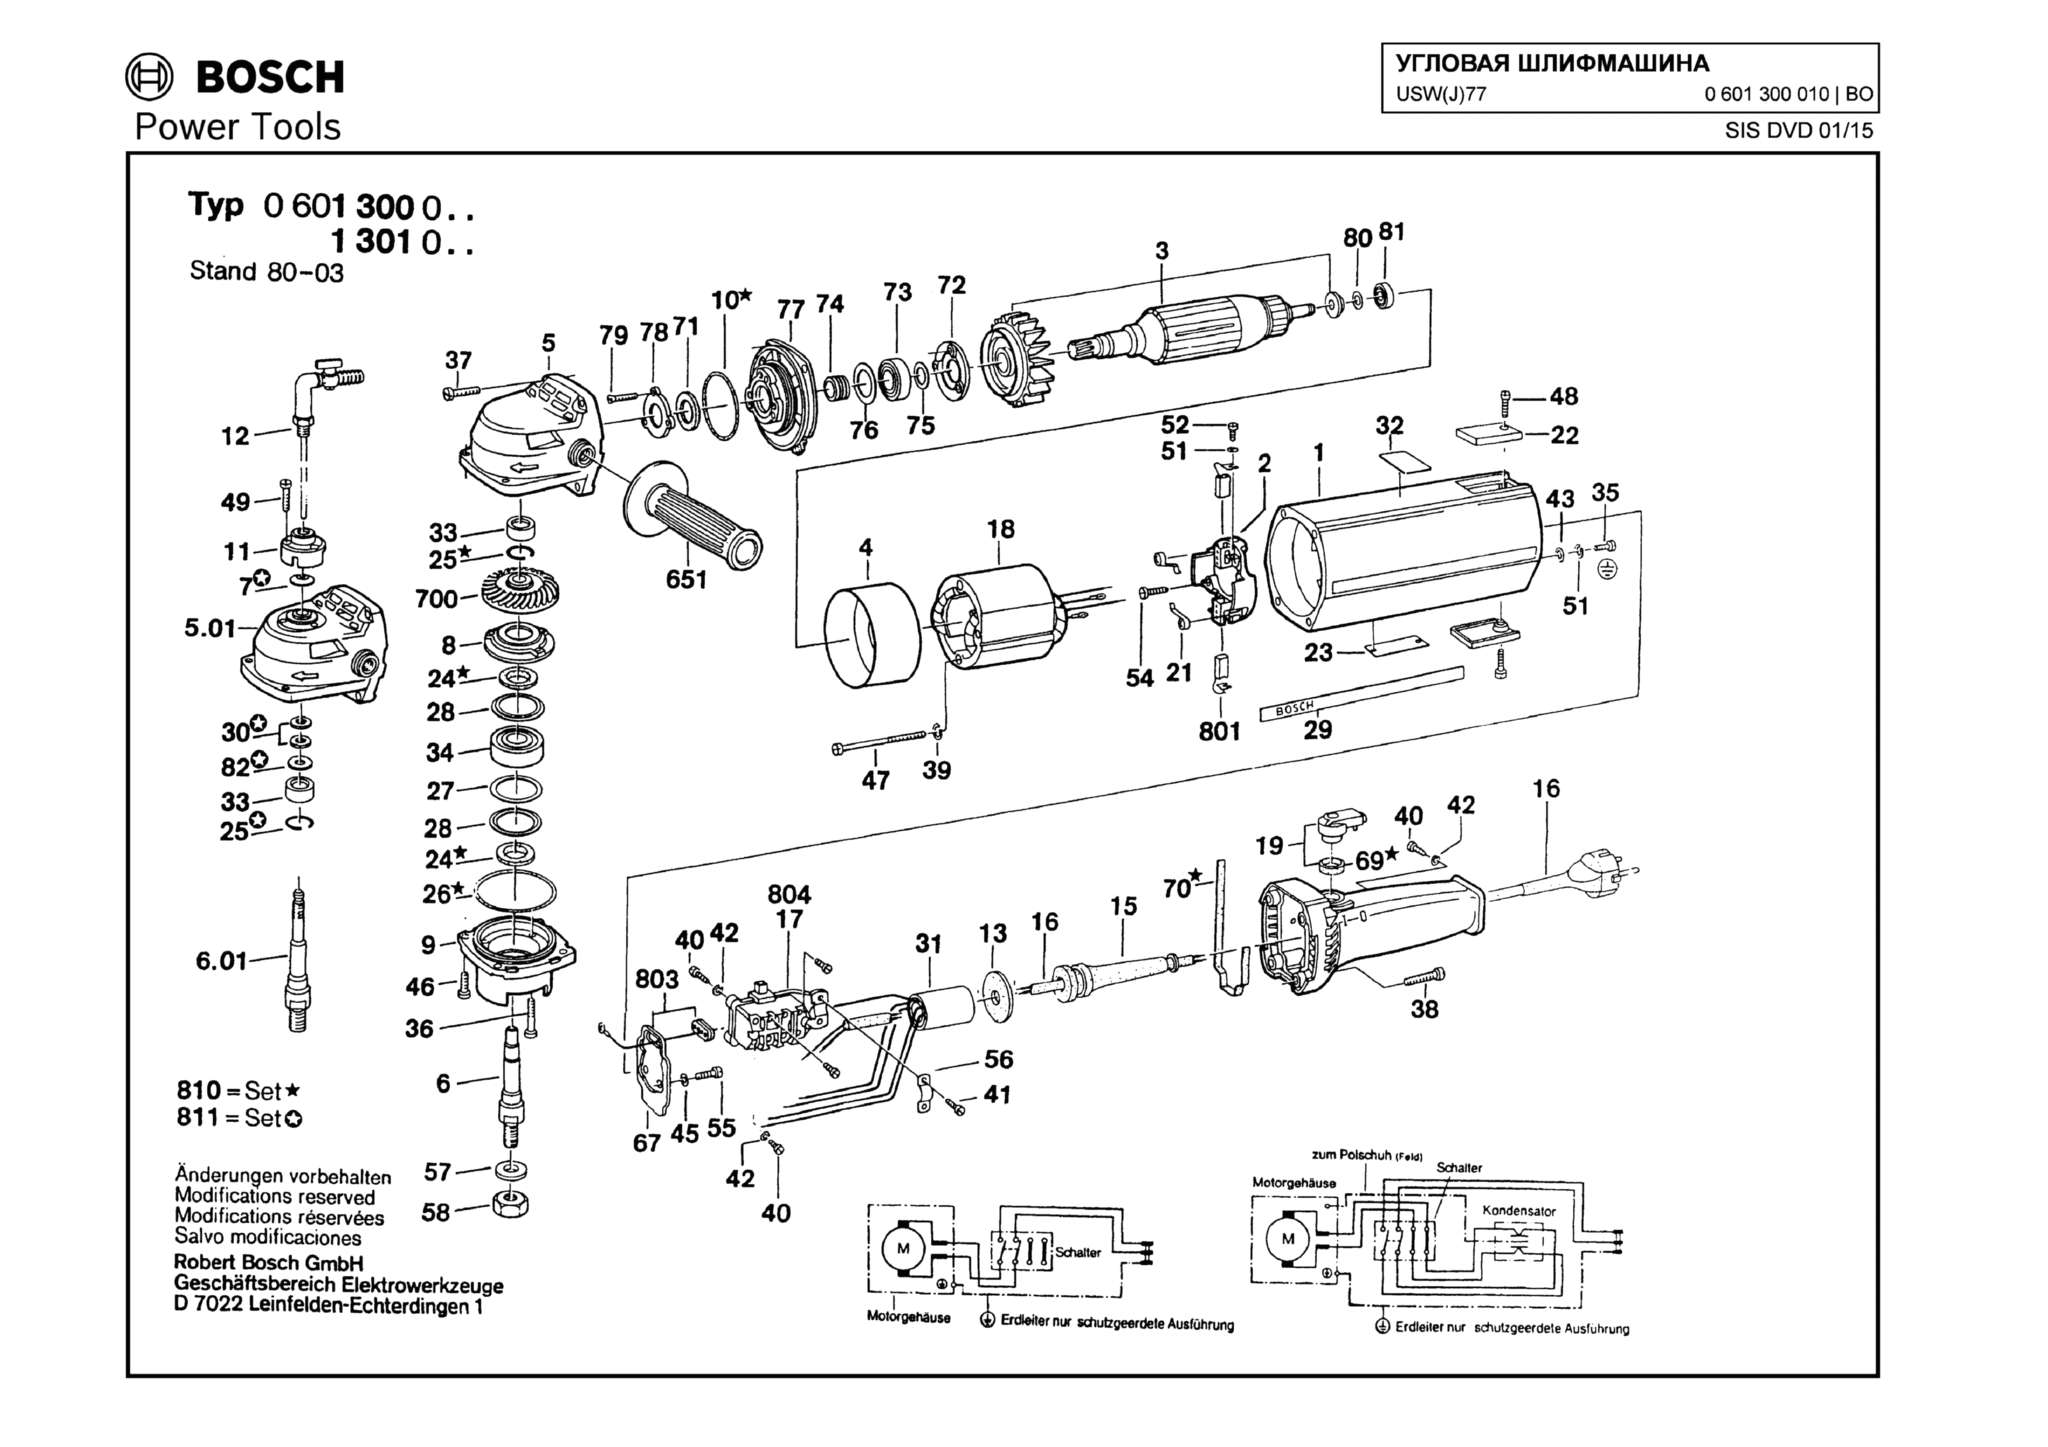 Запчасти, схема и деталировка Bosch USW(J)77 (ТИП 0601300010)